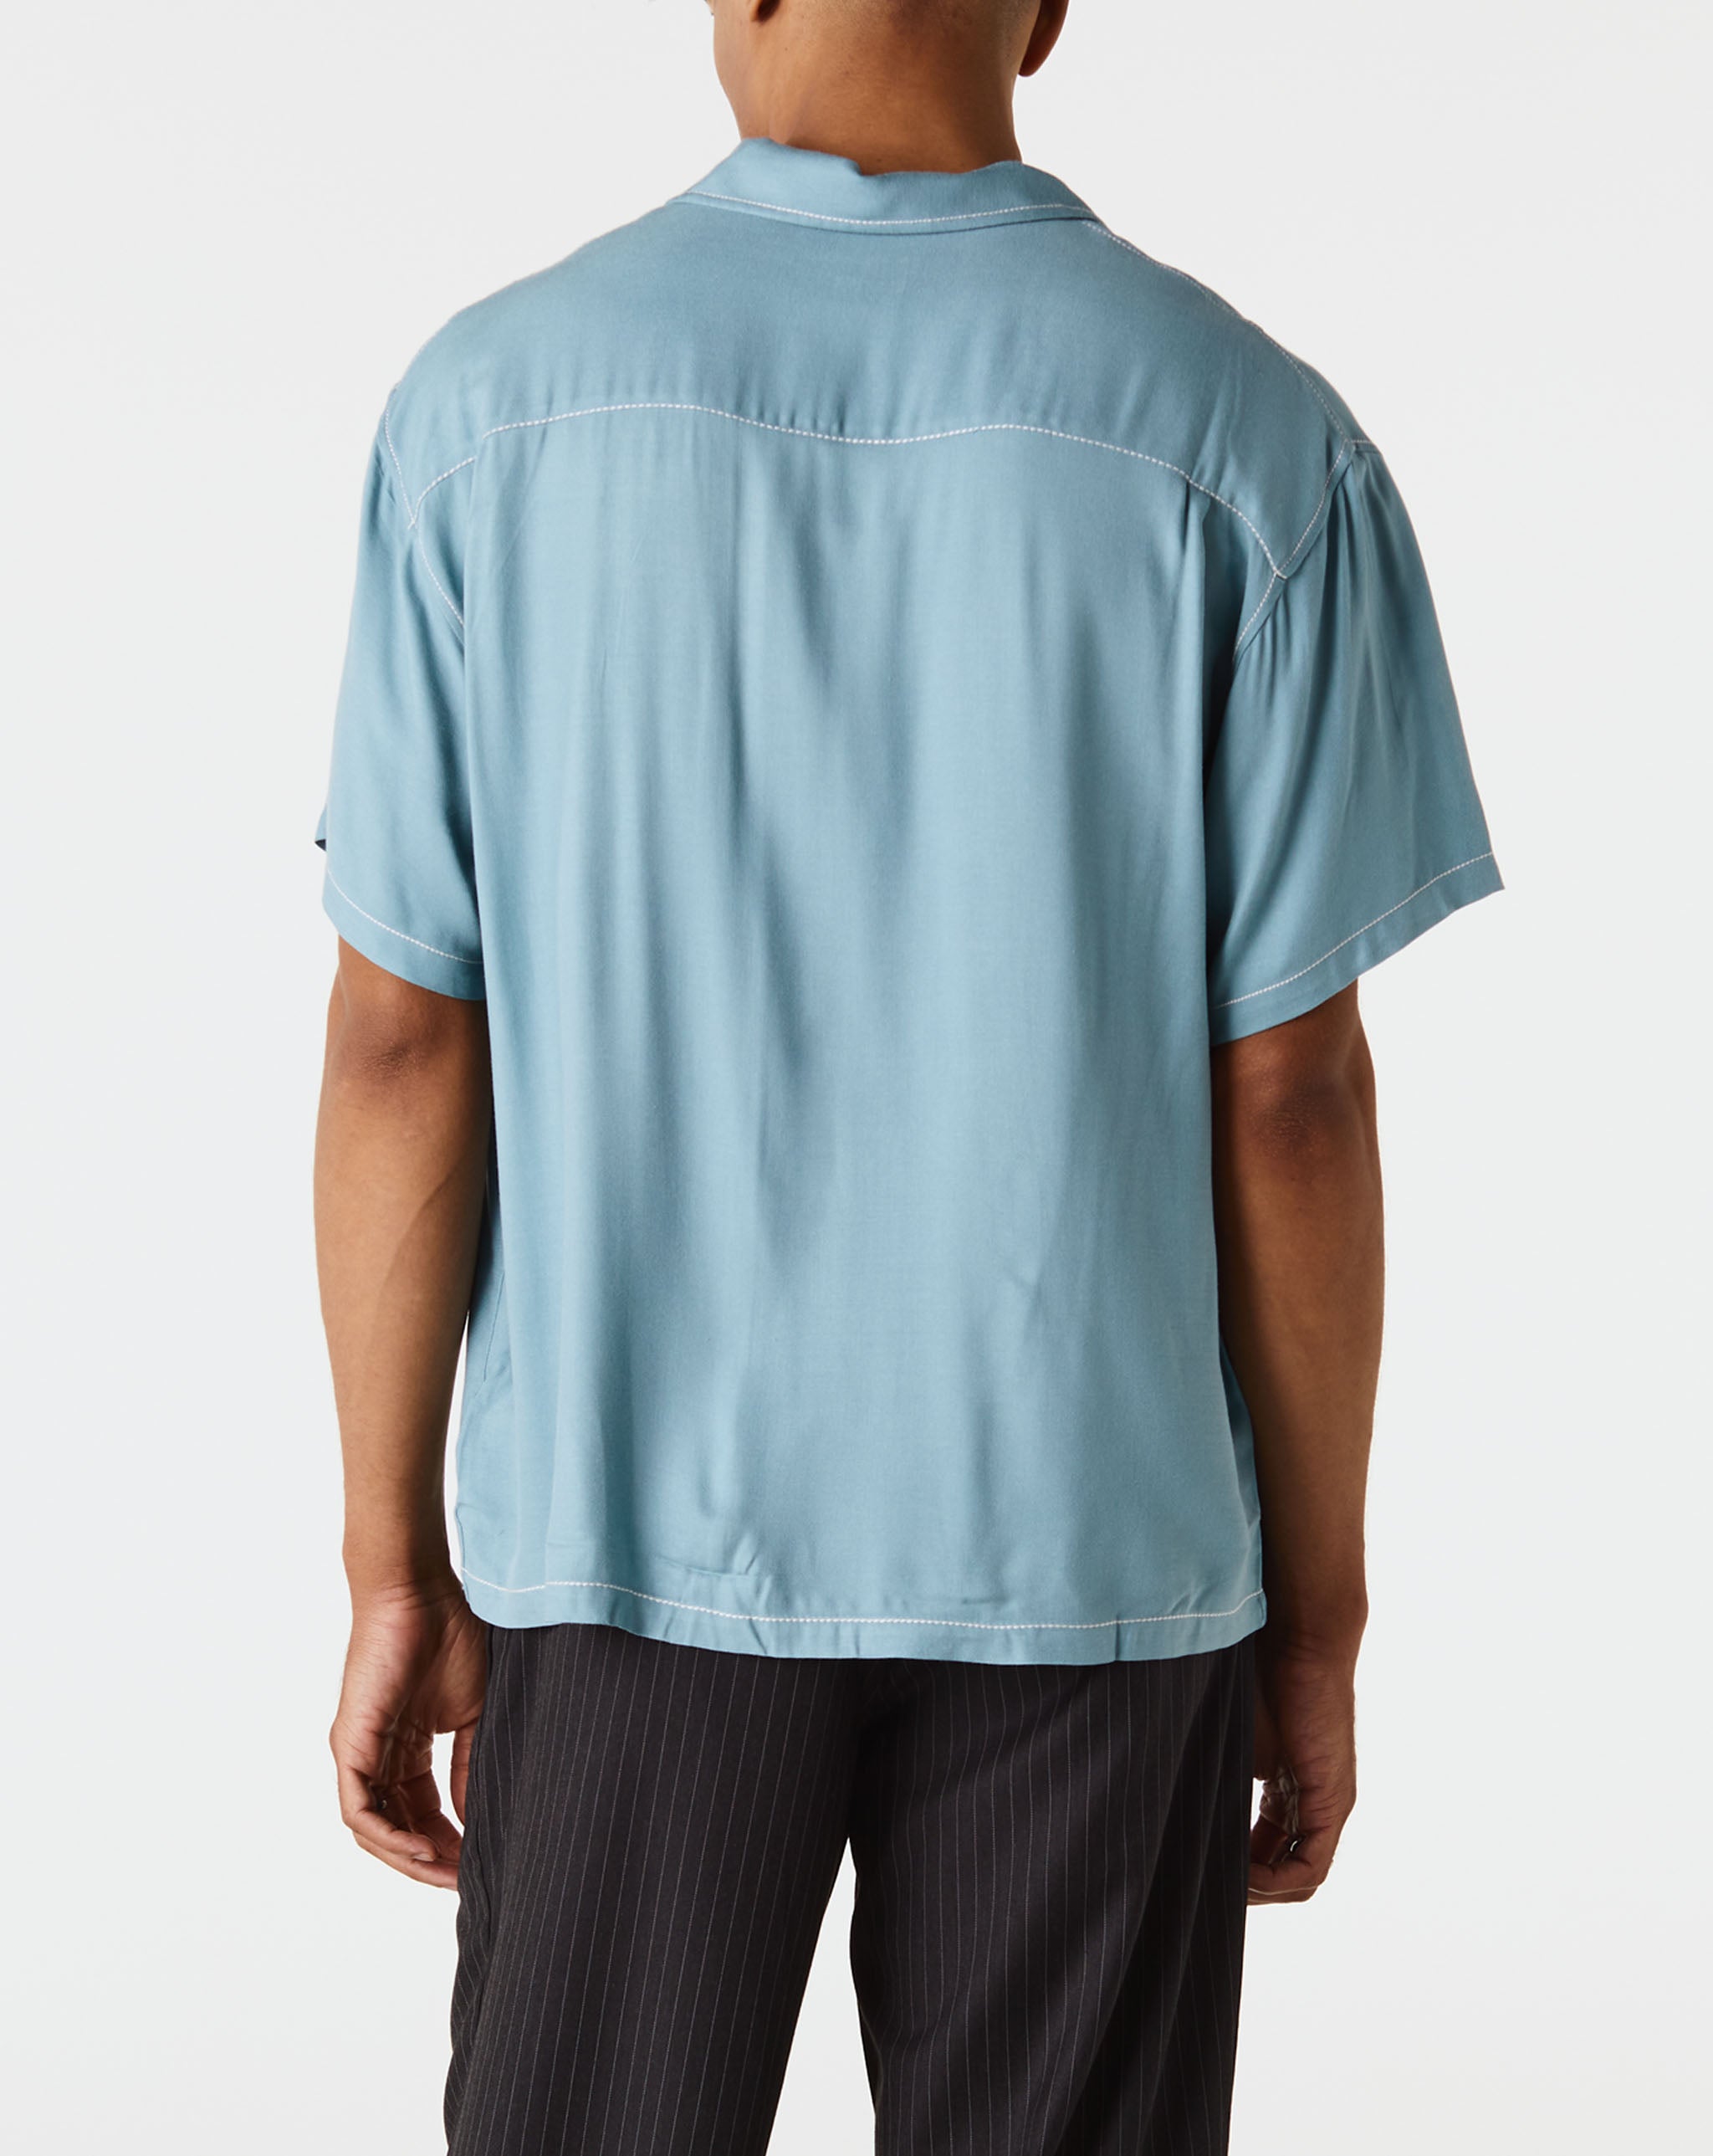 Stüssy Contrast Stitched Shirt  - XHIBITION